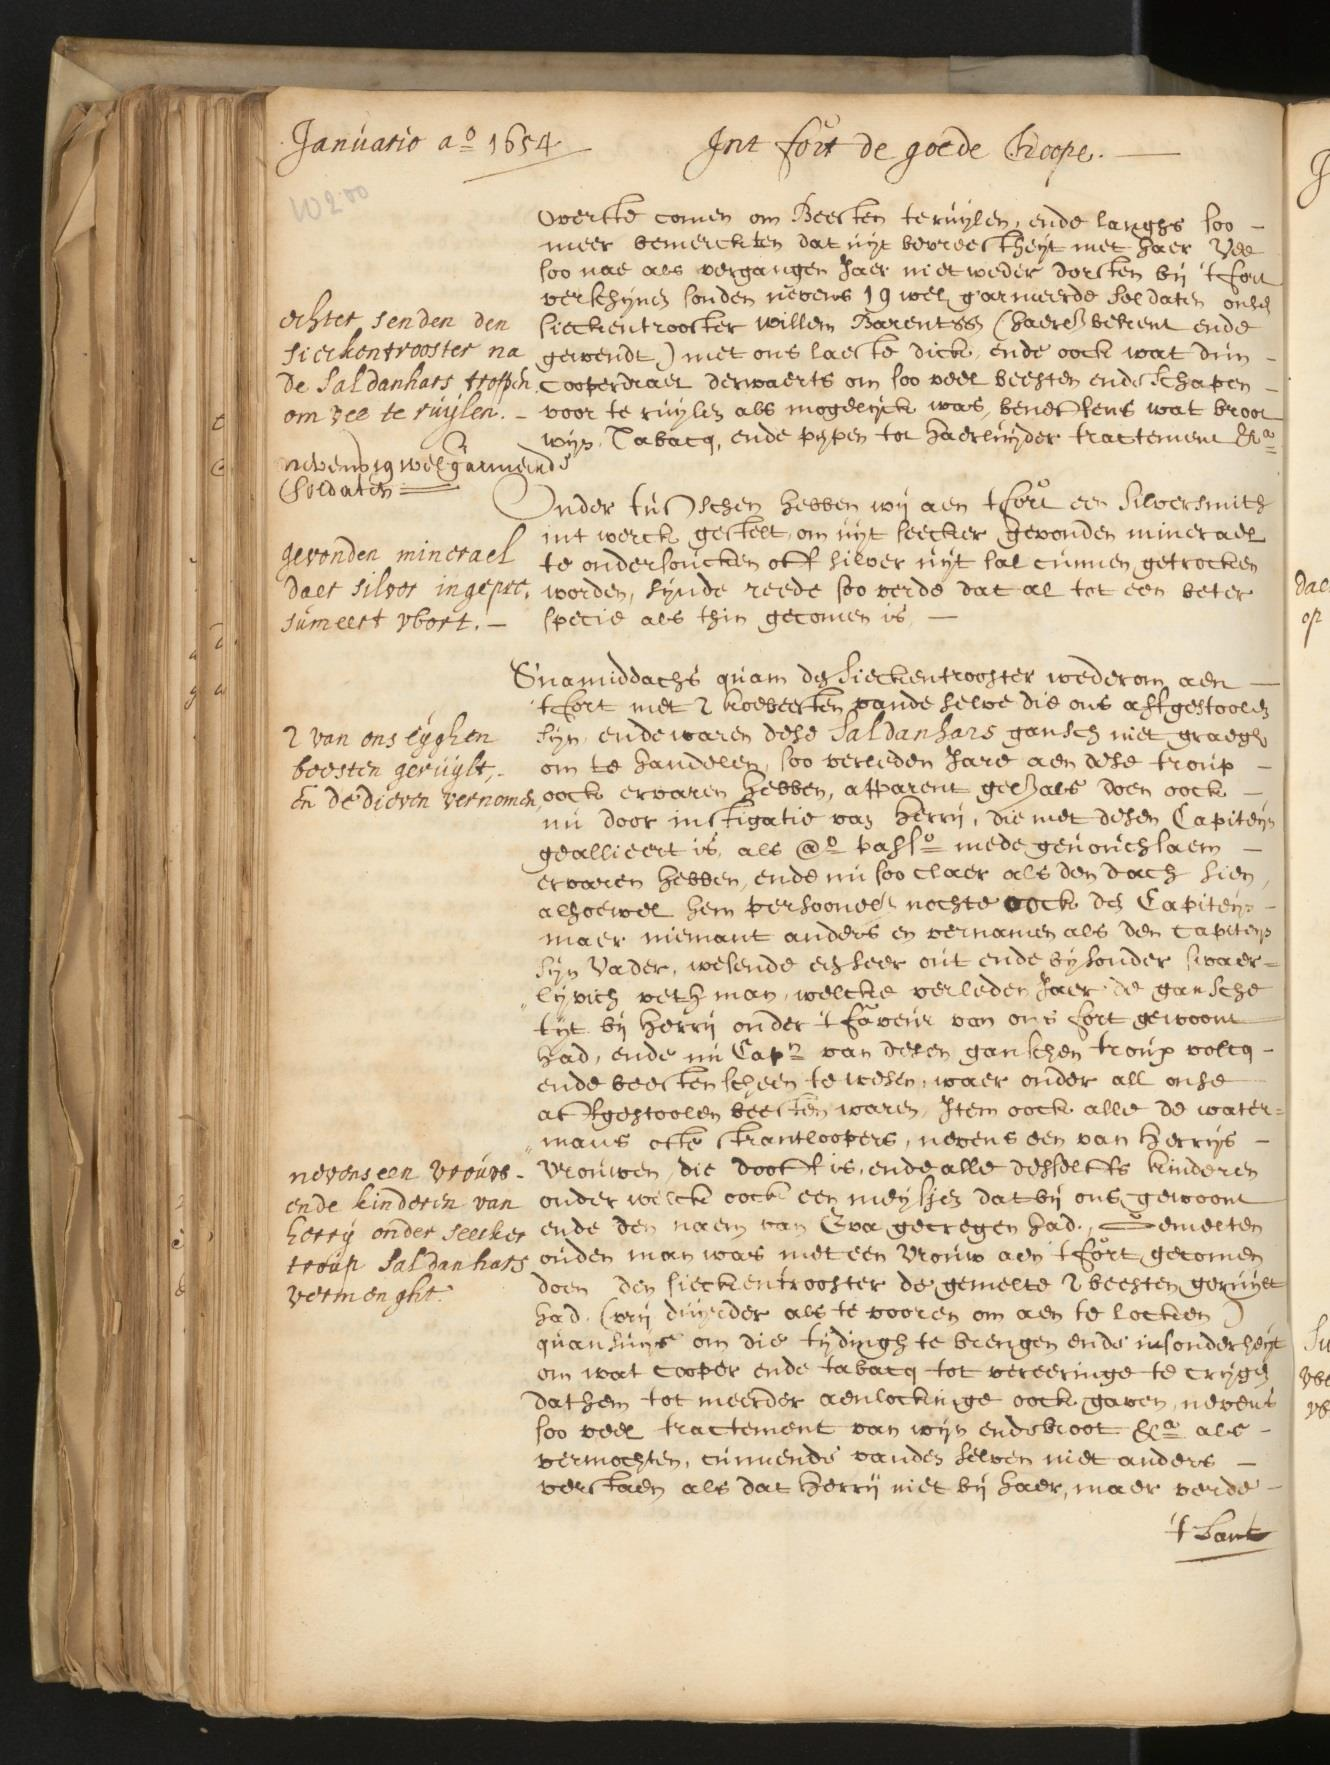 1.04.02 inv. nr. 3989 Jan van Riebeeck schrijft in de dagregisters (een soort dagboek waarin de dagelijkse gebeurtenissen worden beschreven) vaak over Krotoa.